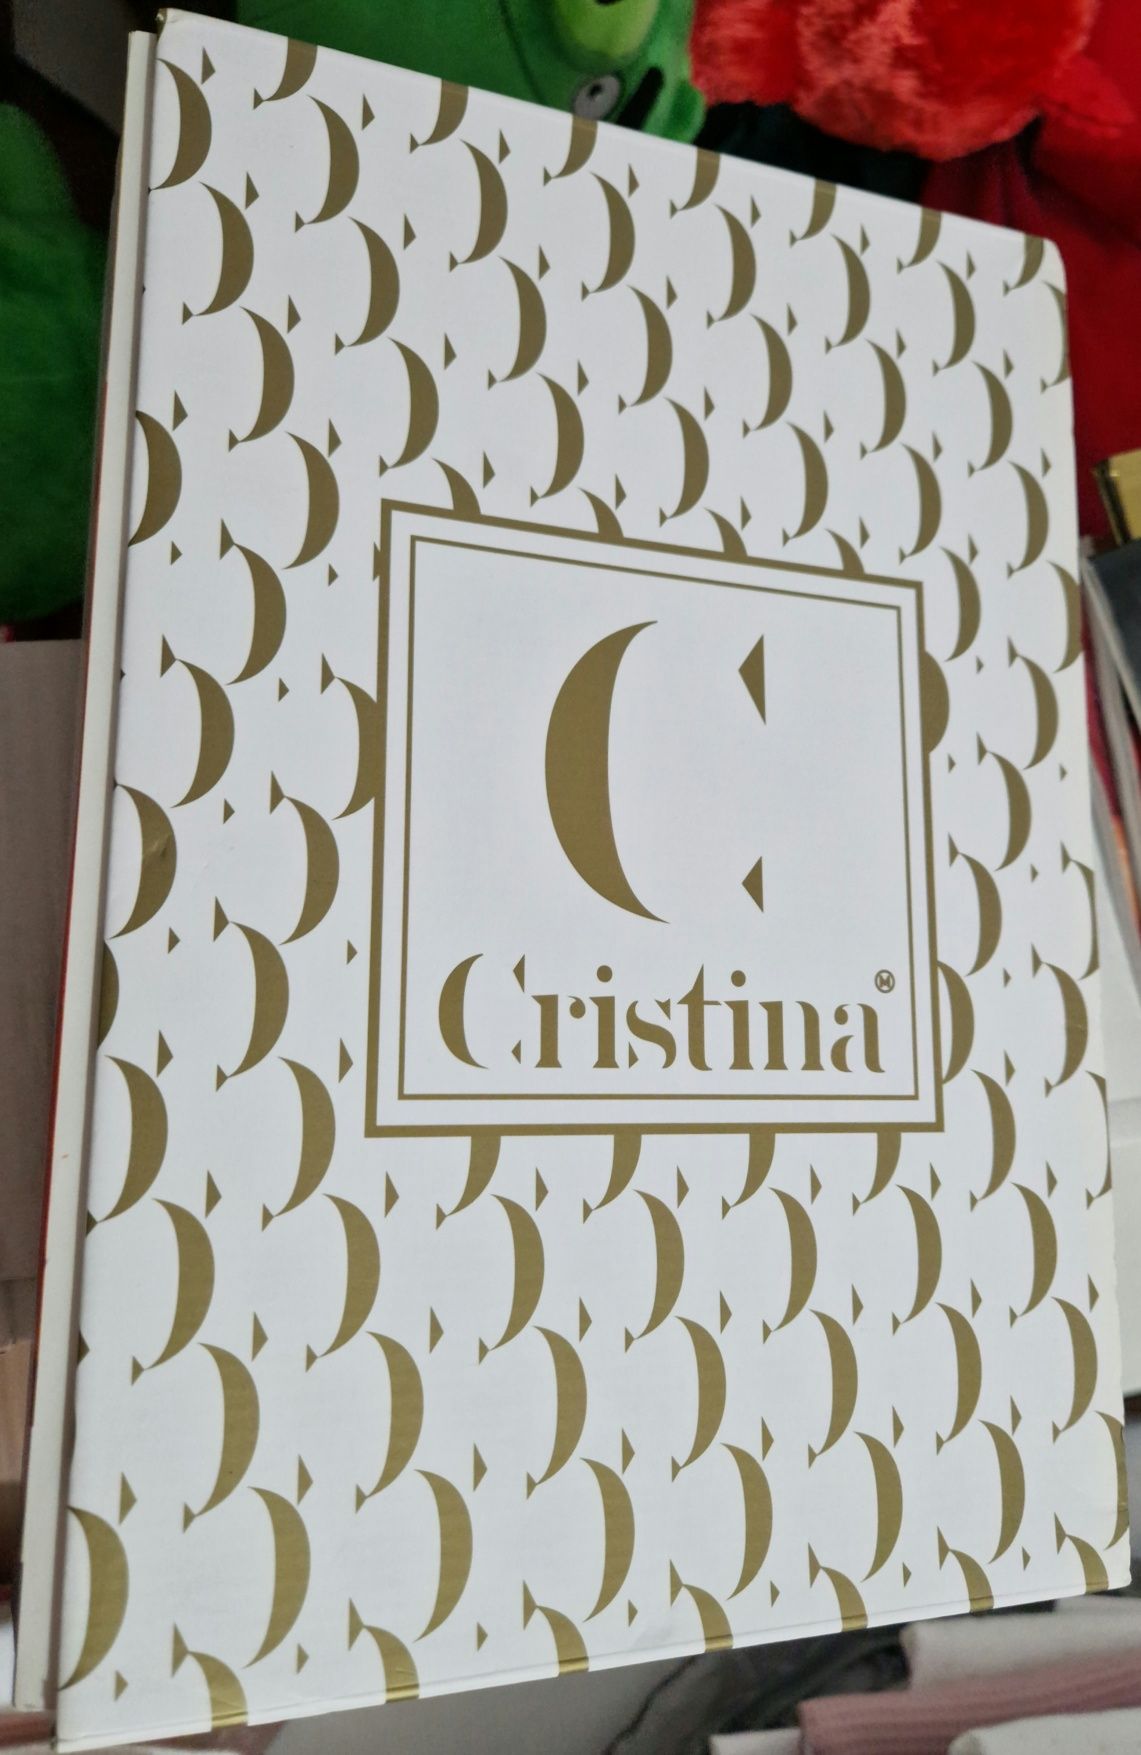 Revistas Cristina